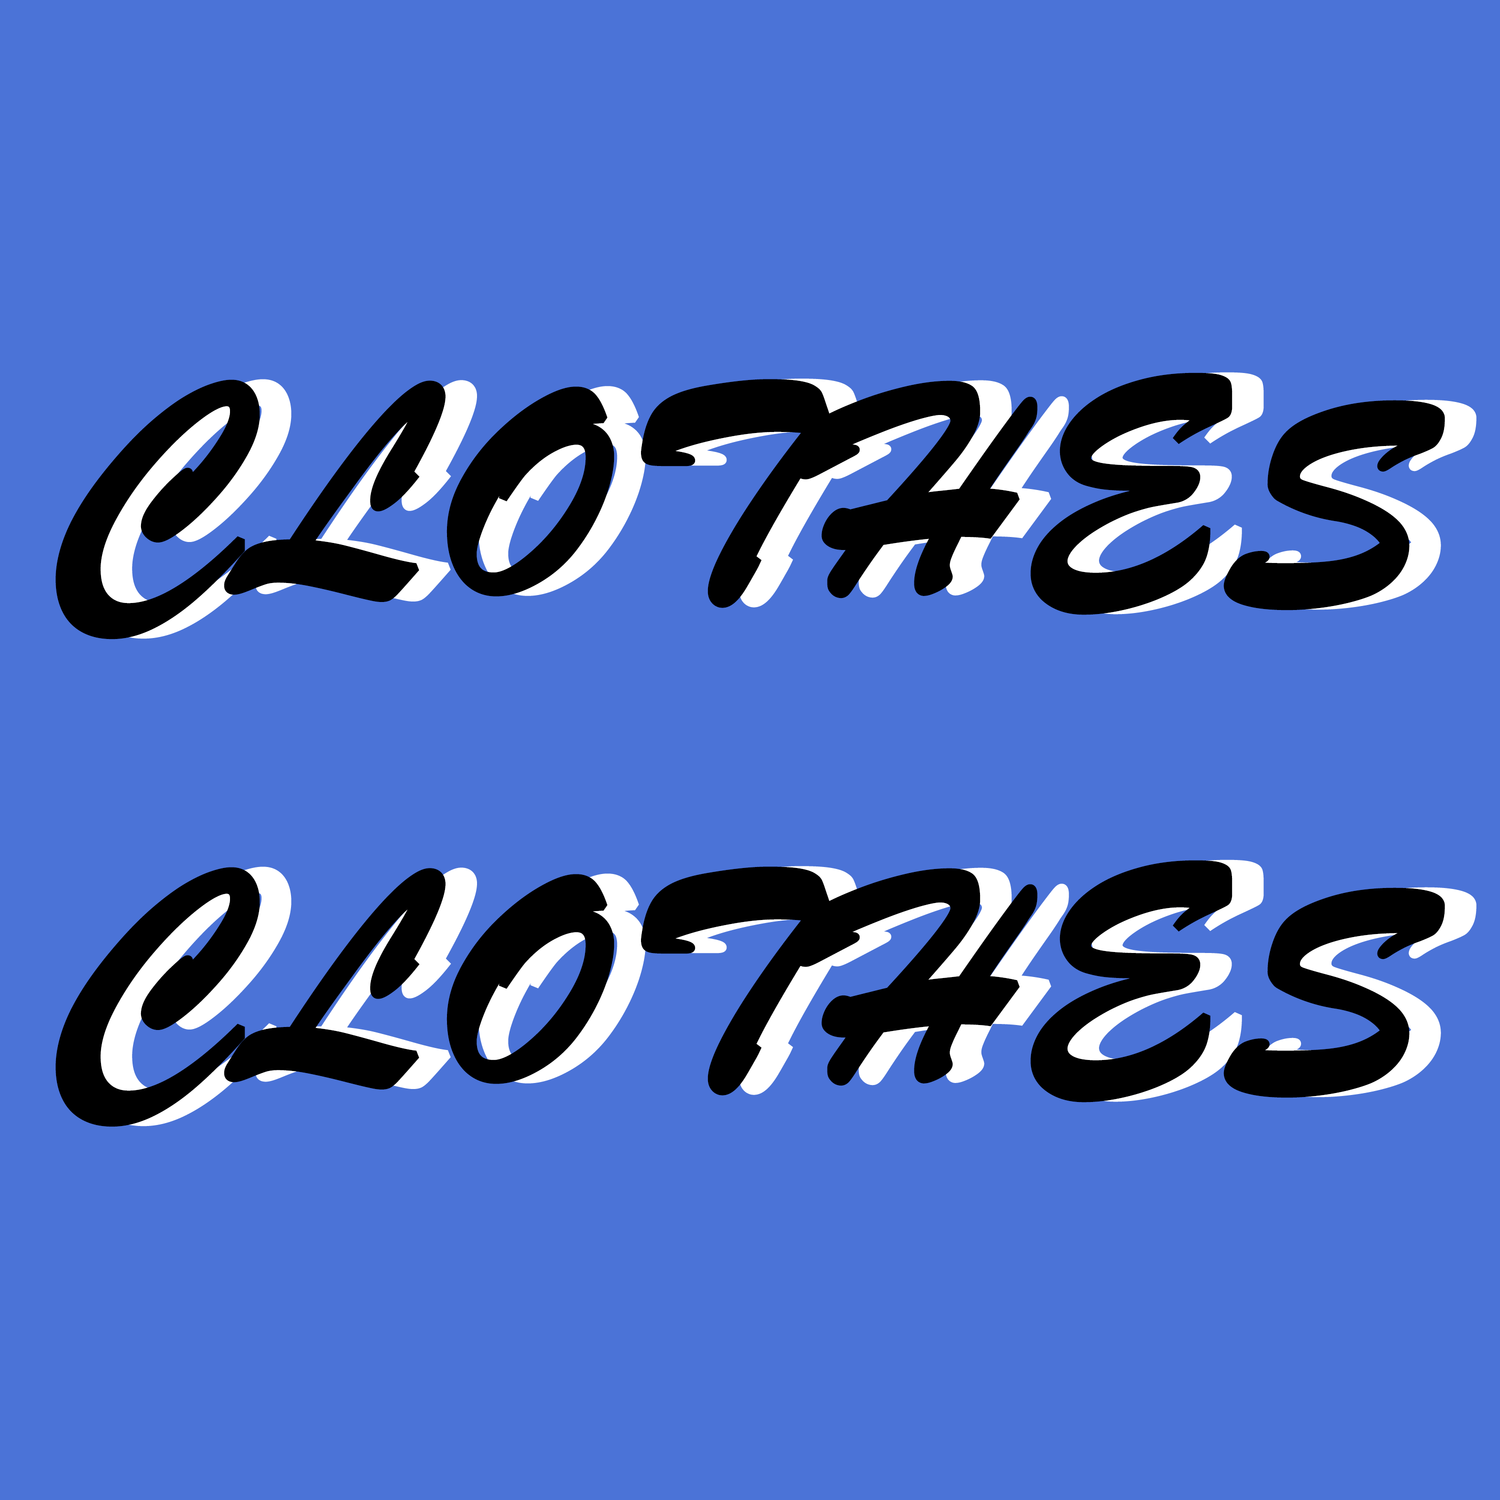 Clothes Clothes